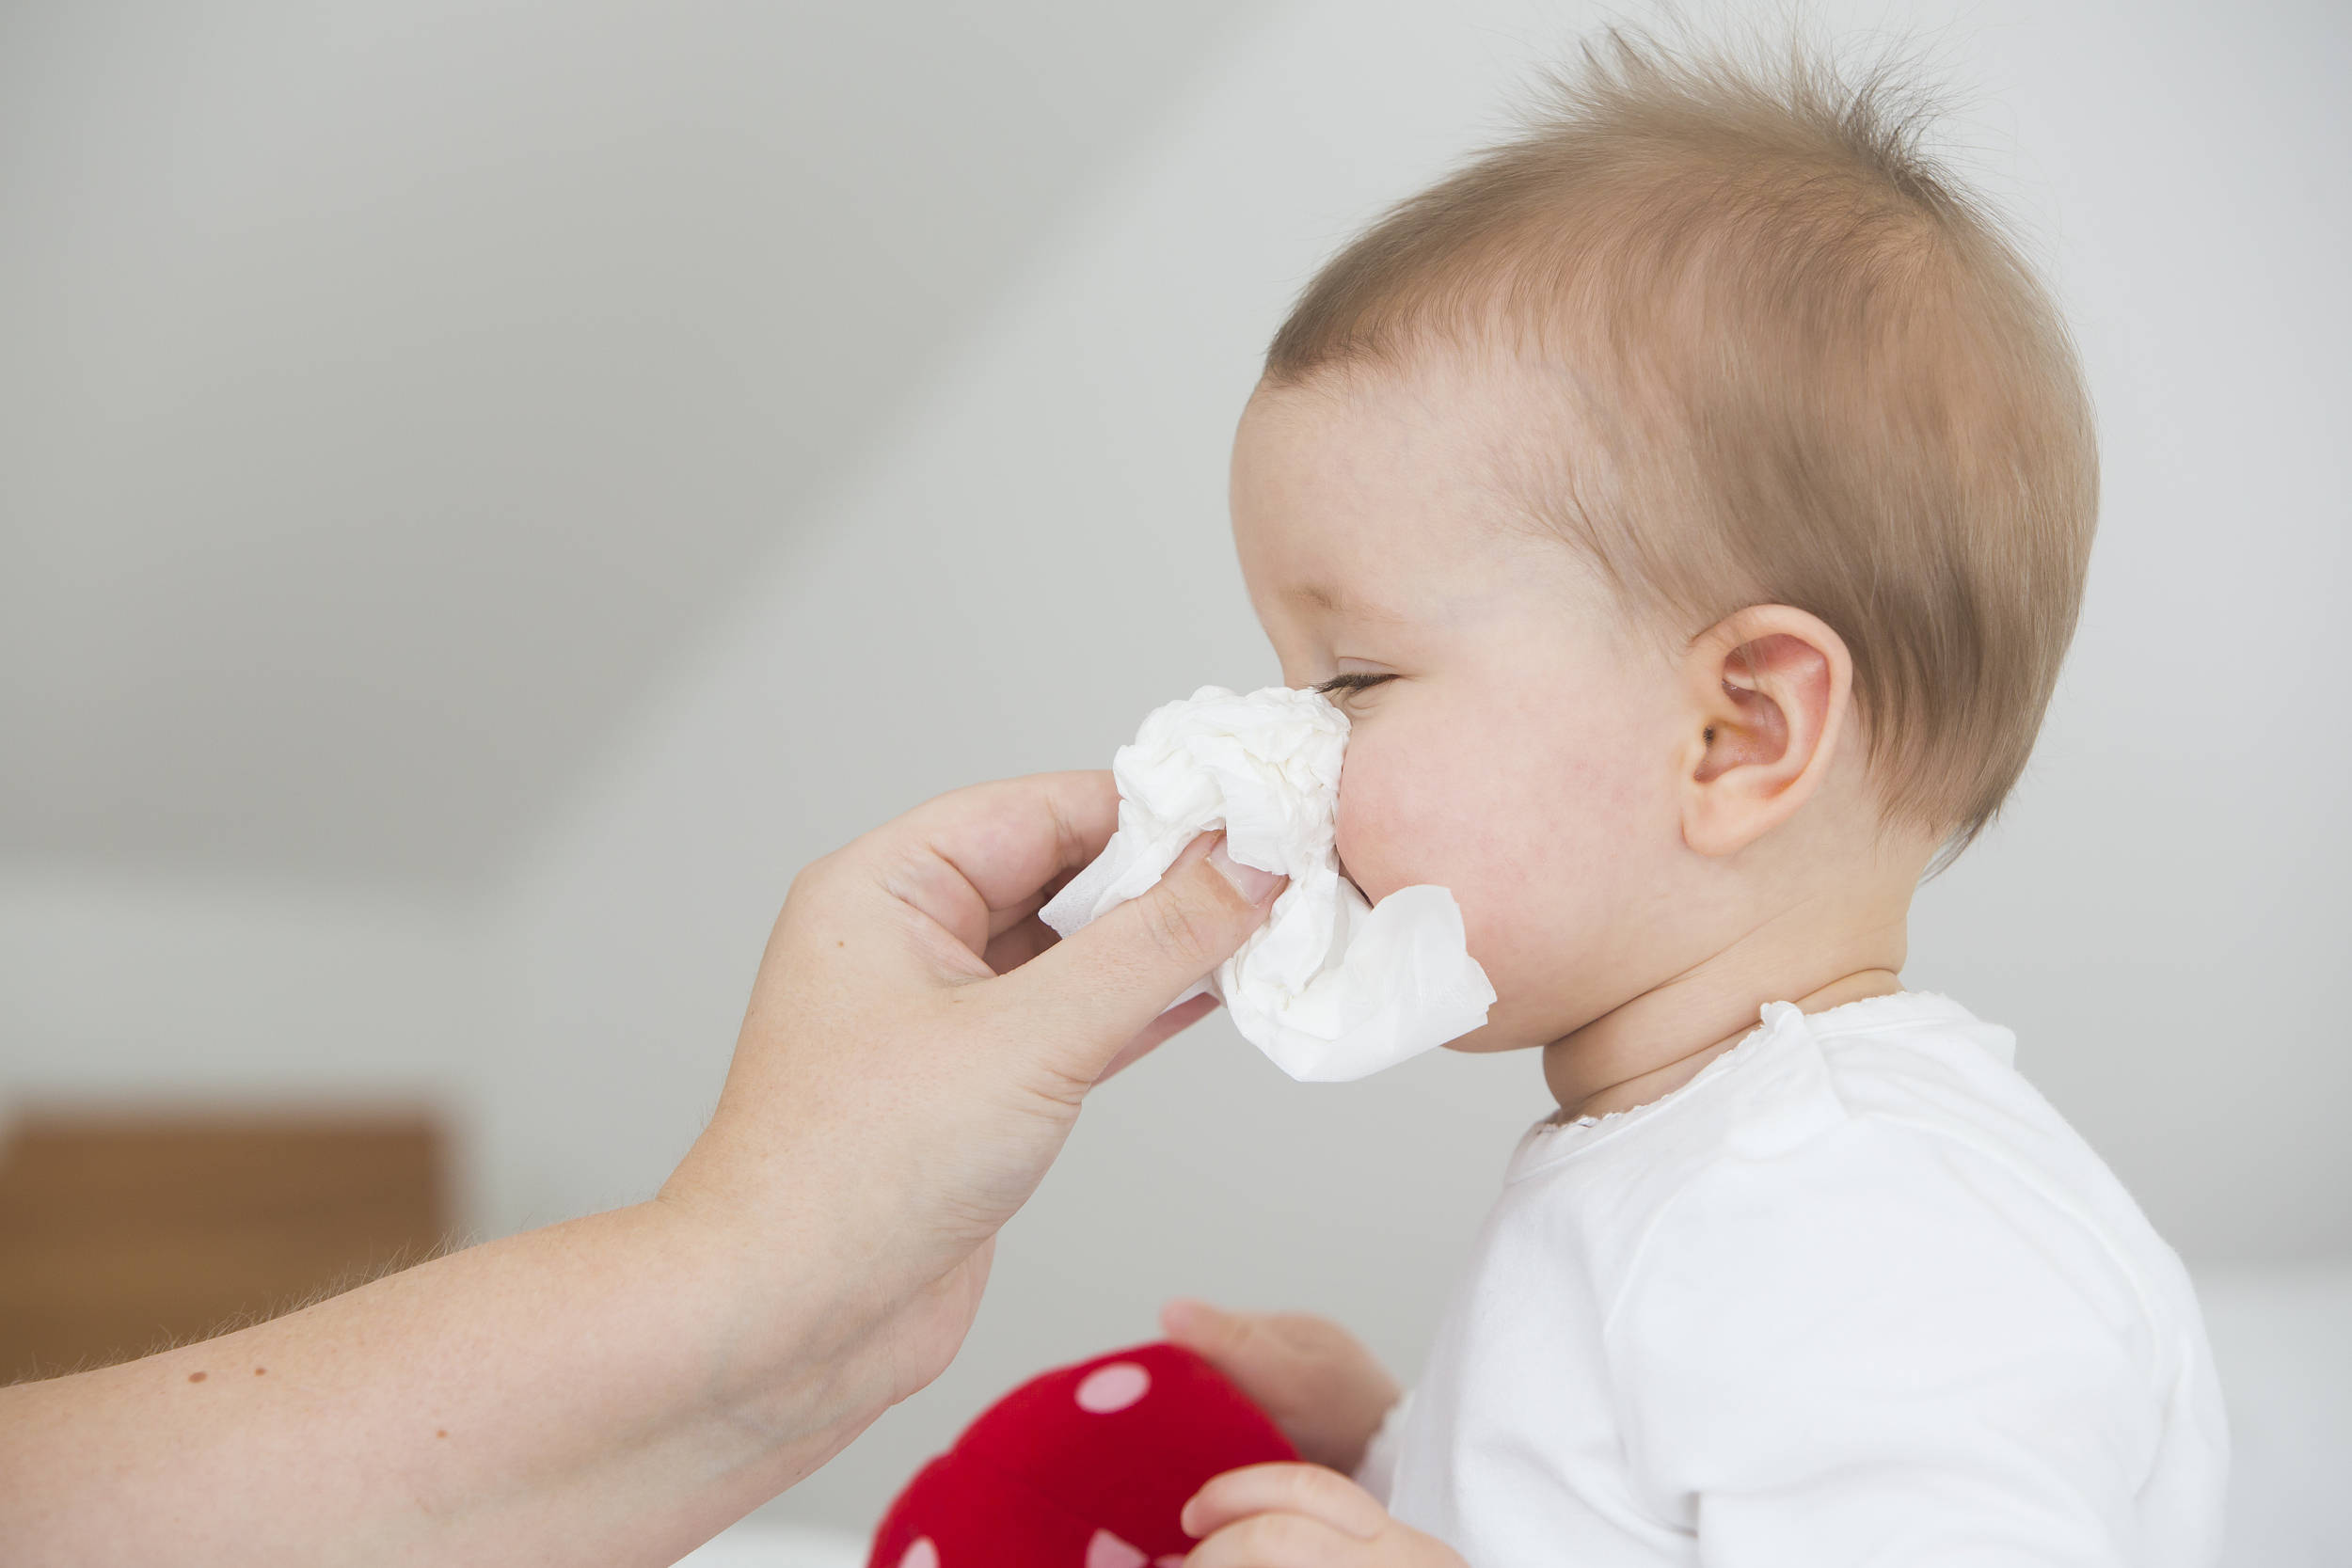 滴鼻、喷鼻、洗鼻有什么区别？哪种方法对宝宝更好